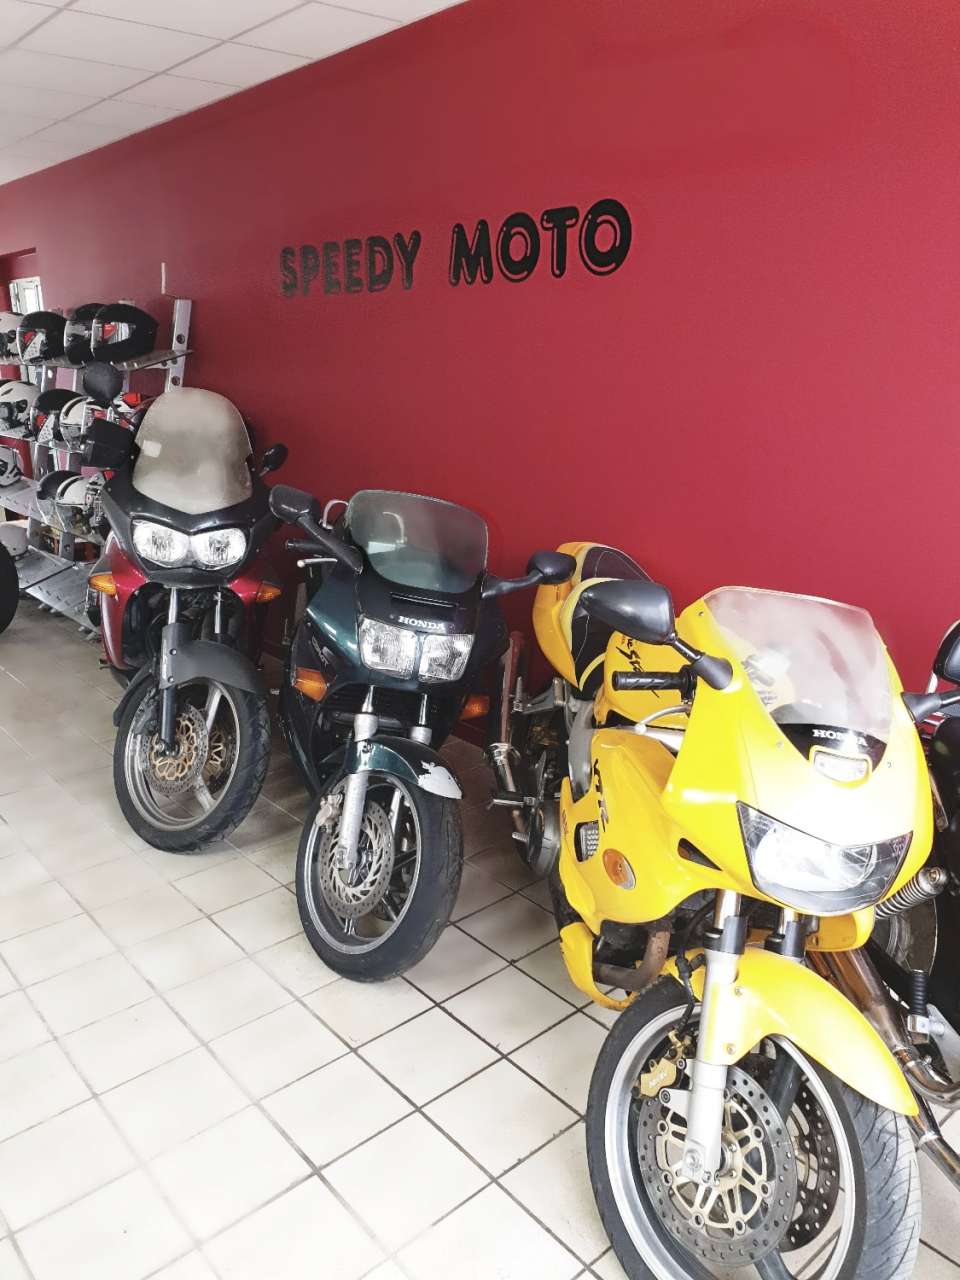 Speedy Moto - Vendeur de motos à Lunel (34400) - Adresse et téléphone sur  l'annuaire Hoodspot